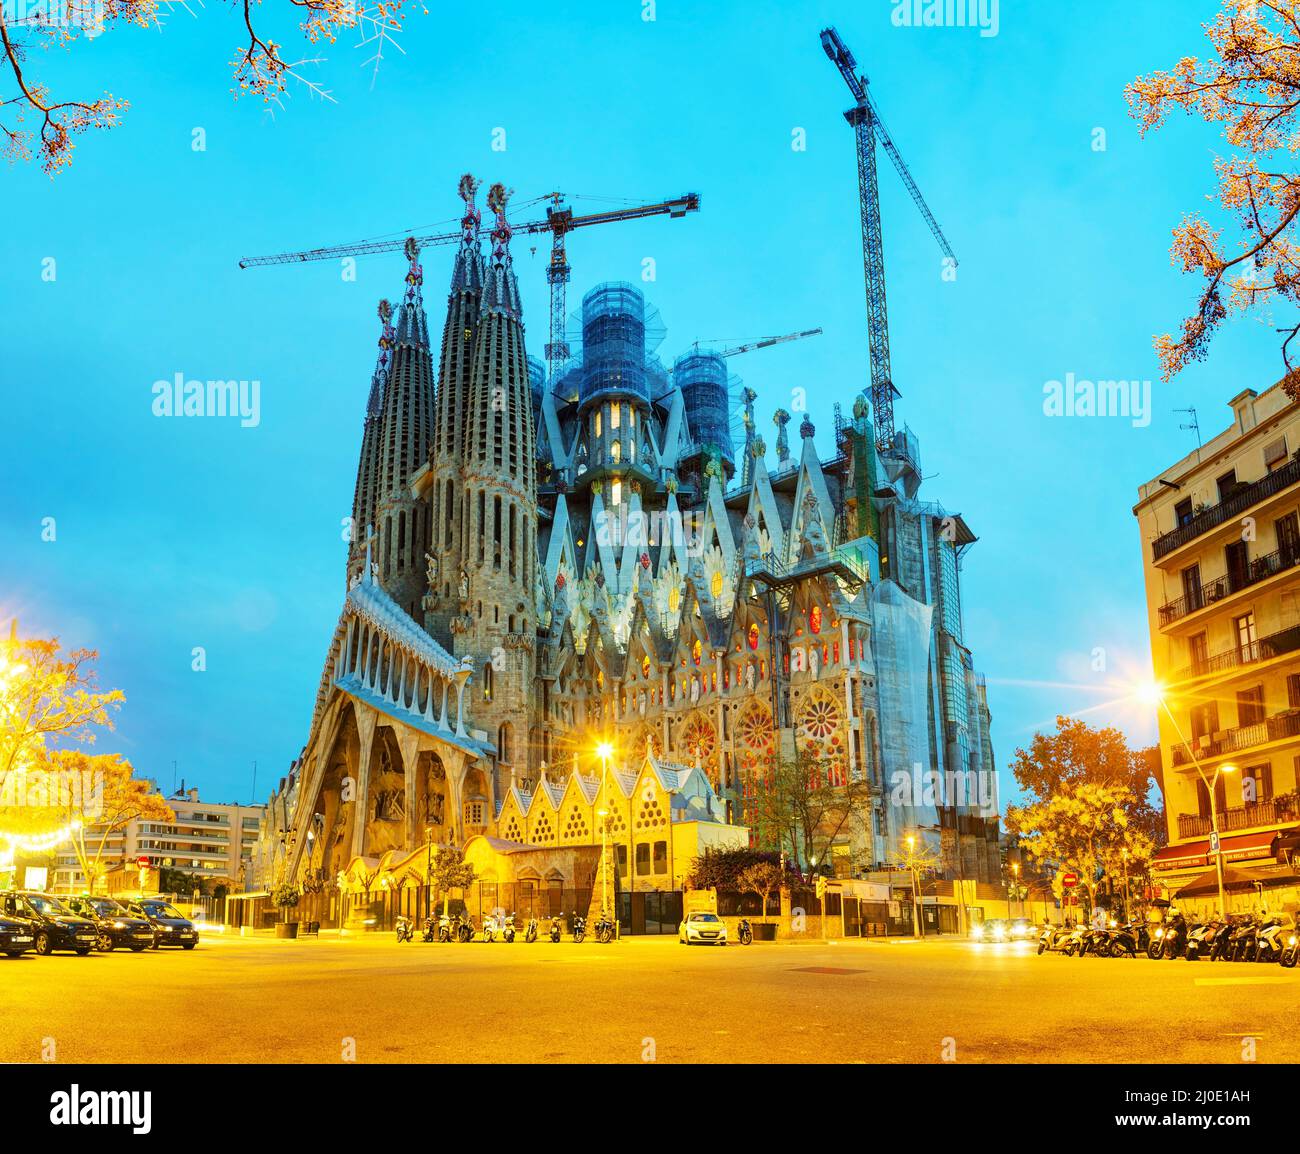 Overview with Sagrada Familia basilica at sunrise Stock Photo